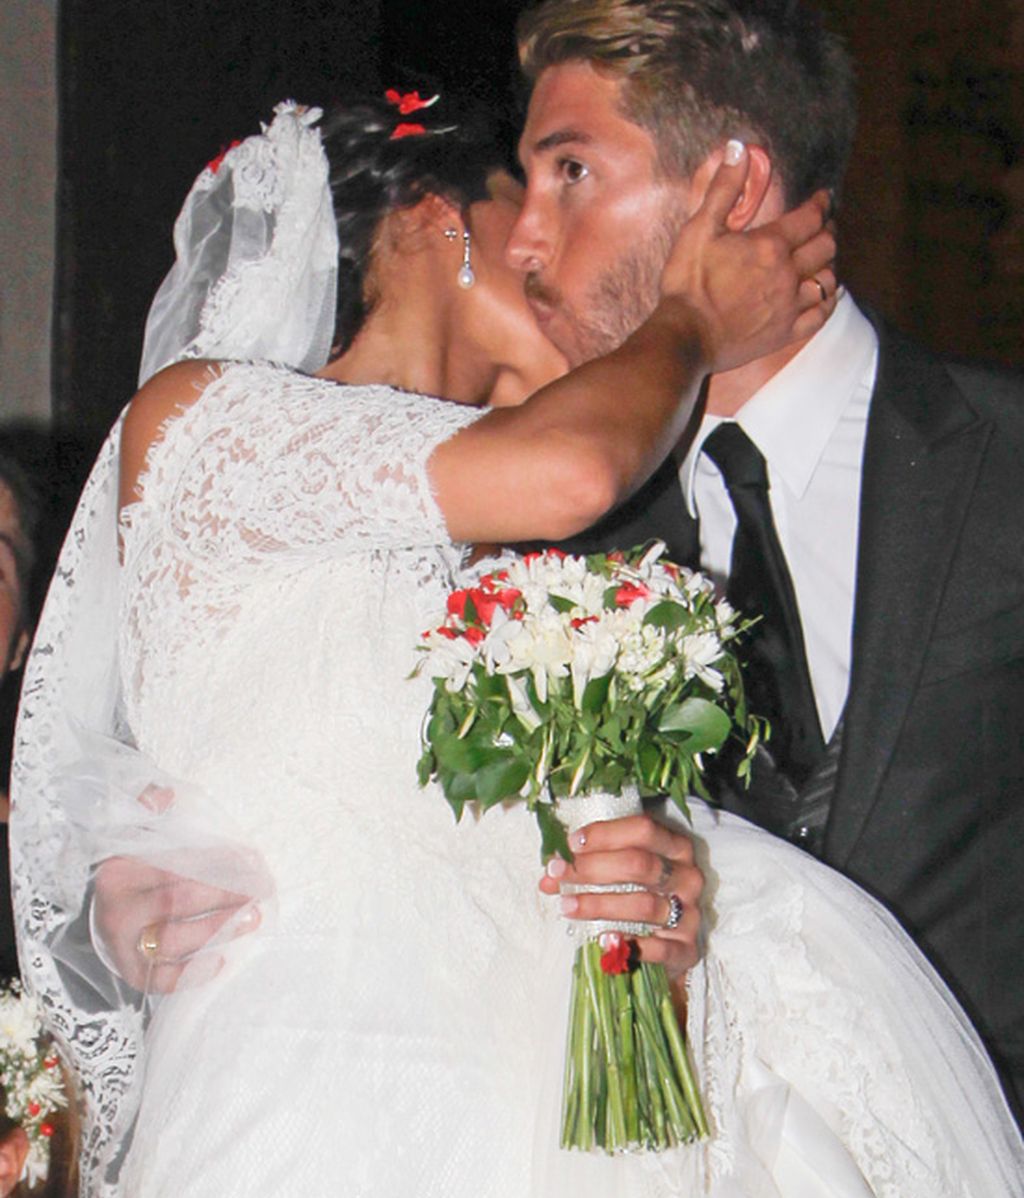 La boda futbolera del fin de semana: la de la hermana de Sergio Ramos